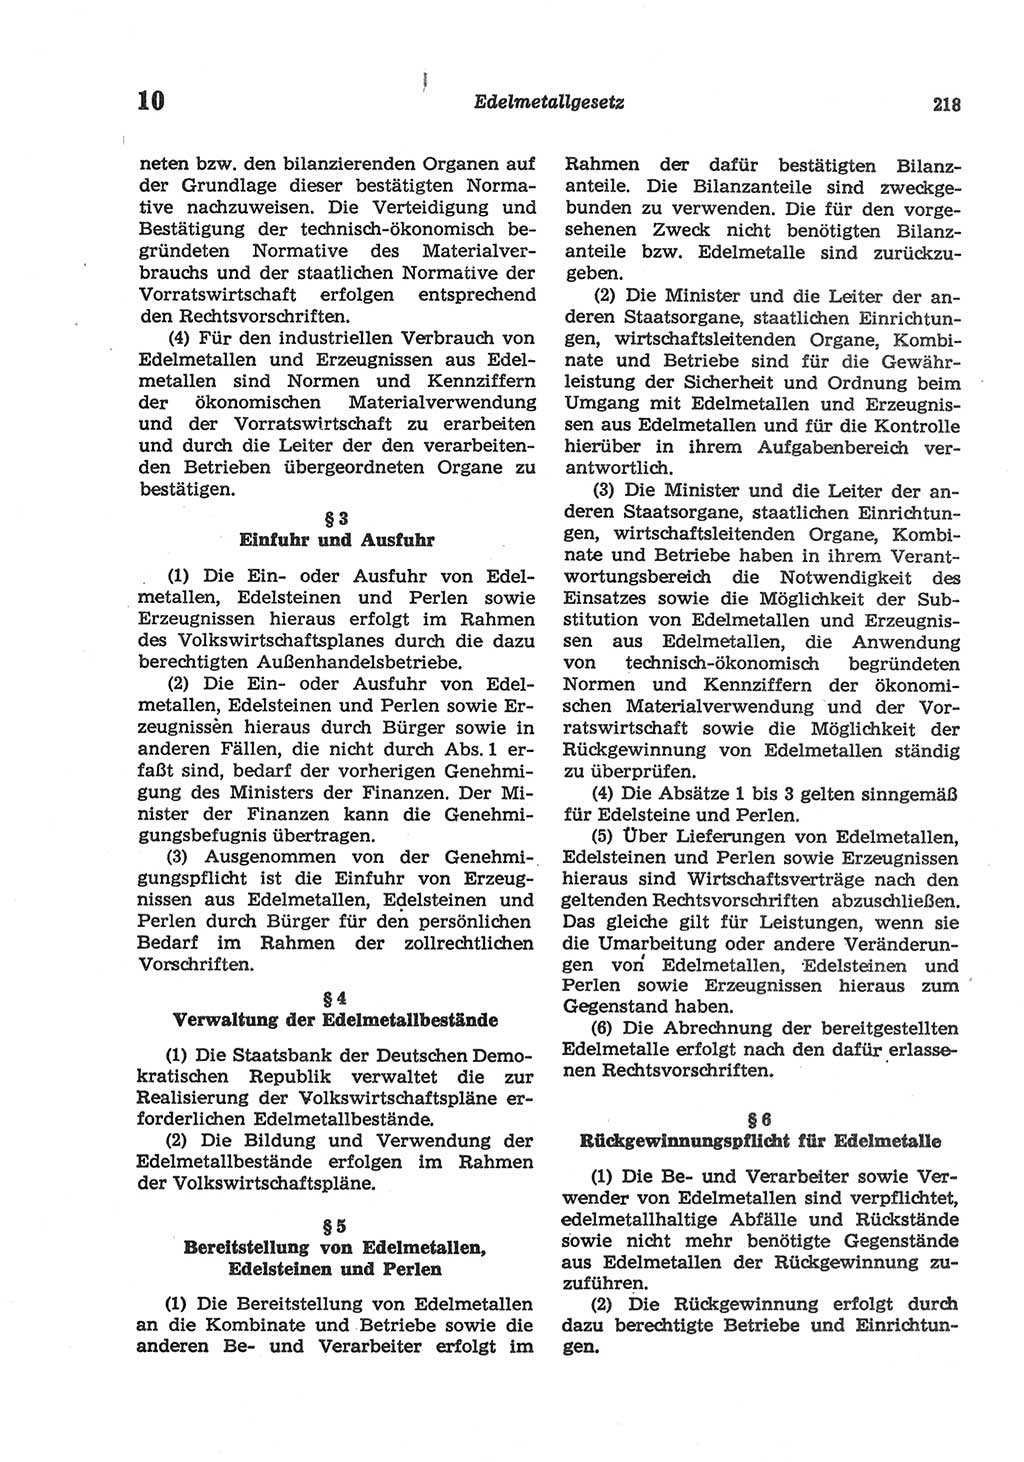 Strafgesetzbuch (StGB) der Deutschen Demokratischen Republik (DDR) und angrenzende Gesetze und Bestimmungen 1977, Seite 218 (StGB DDR Ges. Best. 1977, S. 218)